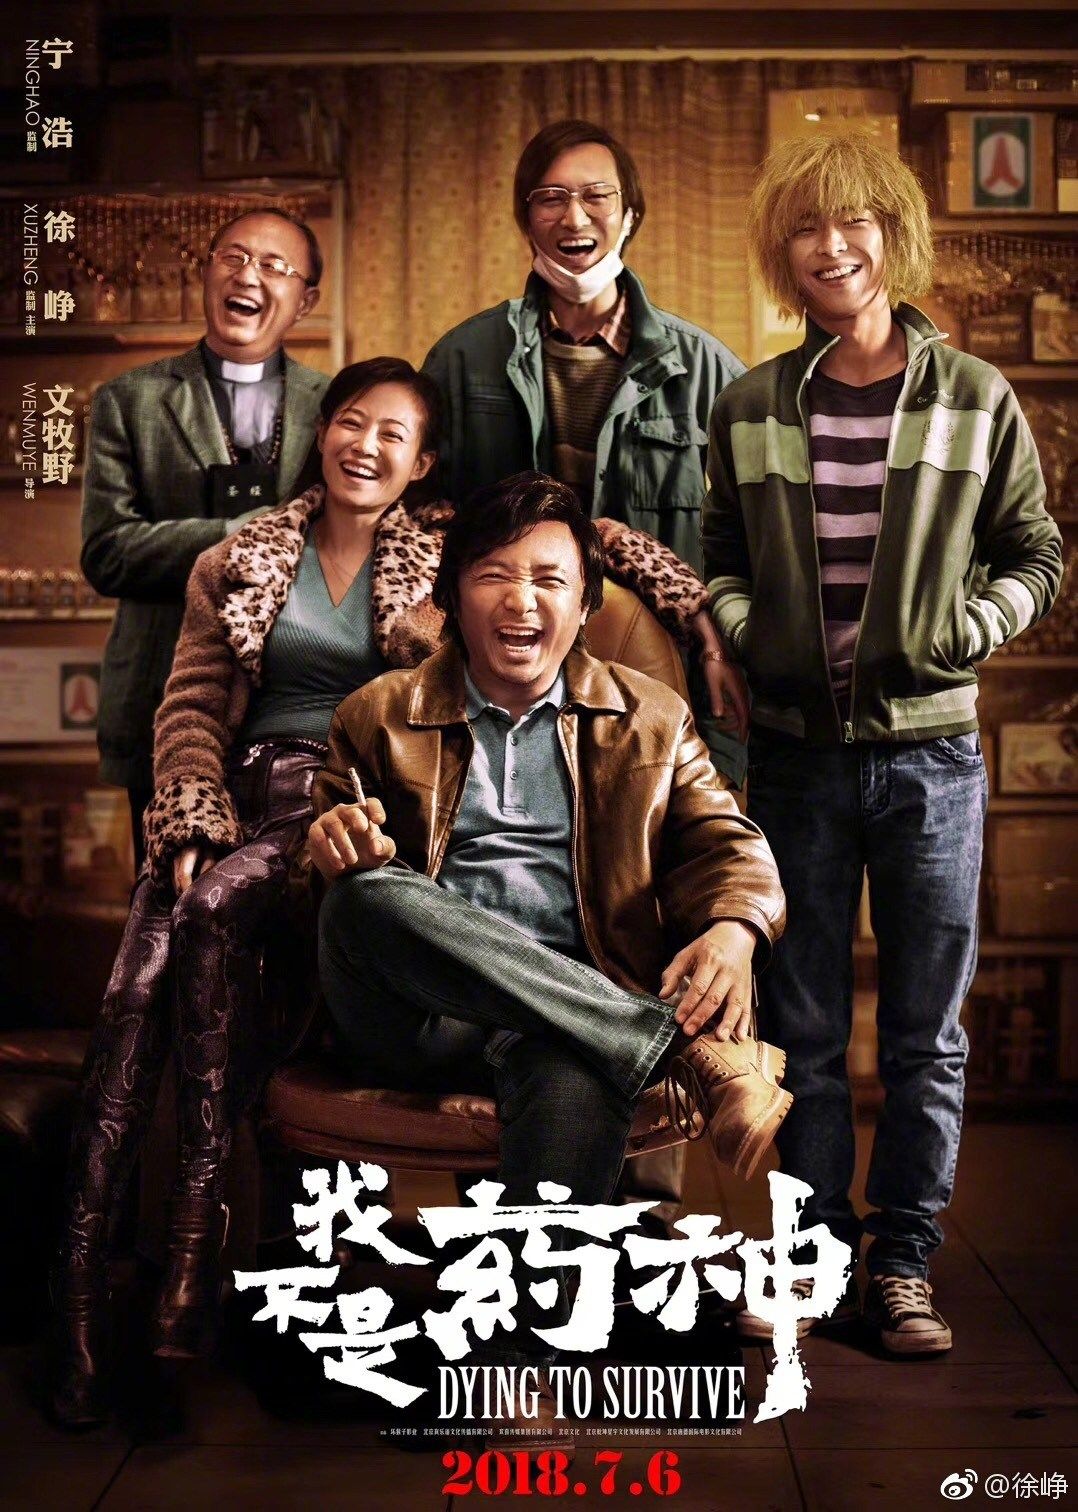 Film Serial Silat Mandarin Yang Bagus